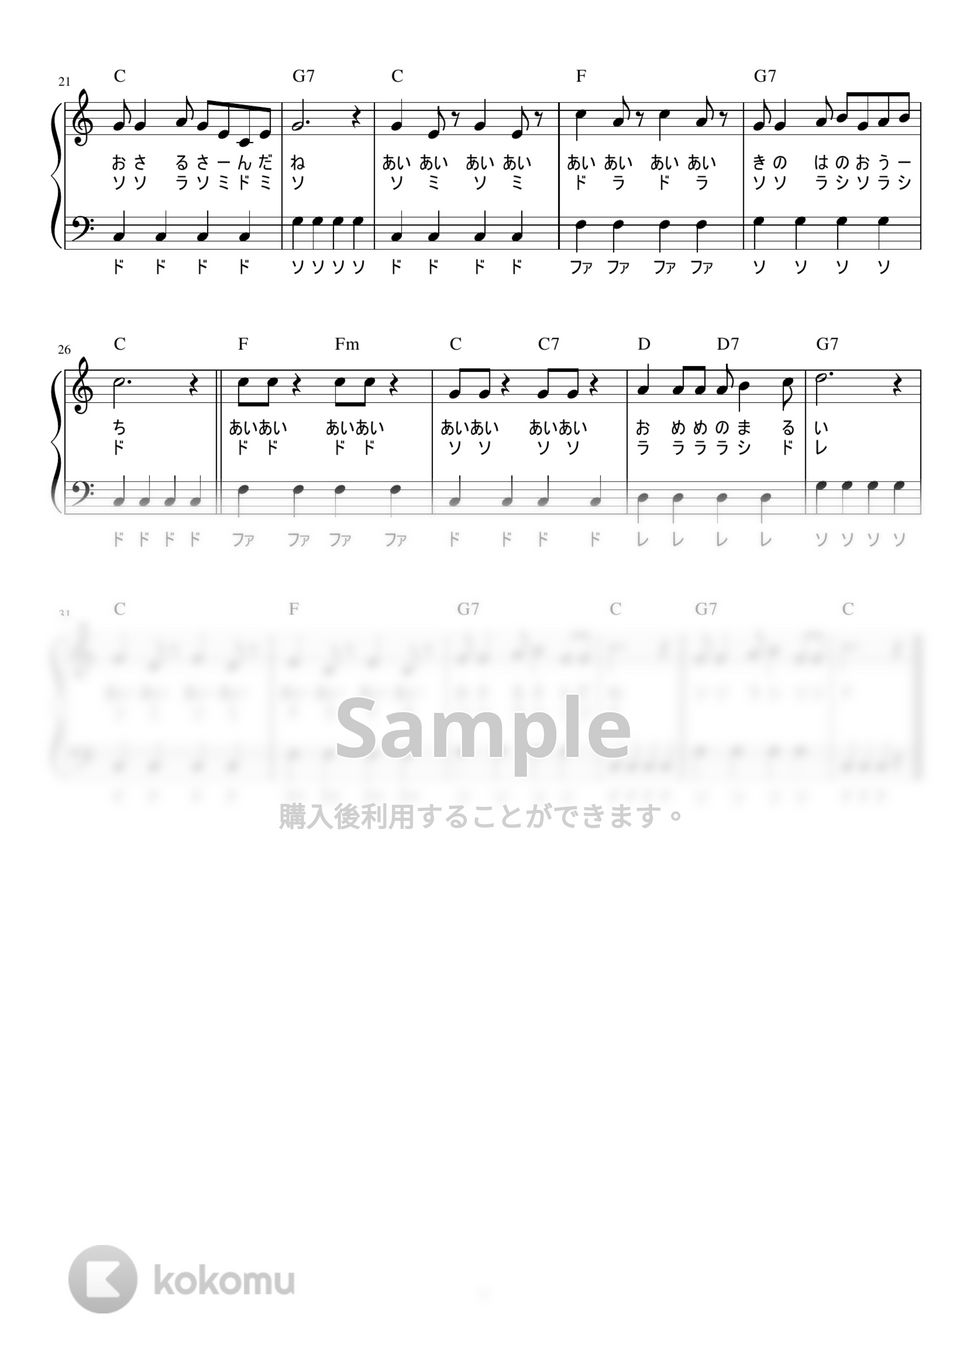 アイアイ (かんたん / 歌詞付き / ドレミ付き / 初心者) by piano.tokyo